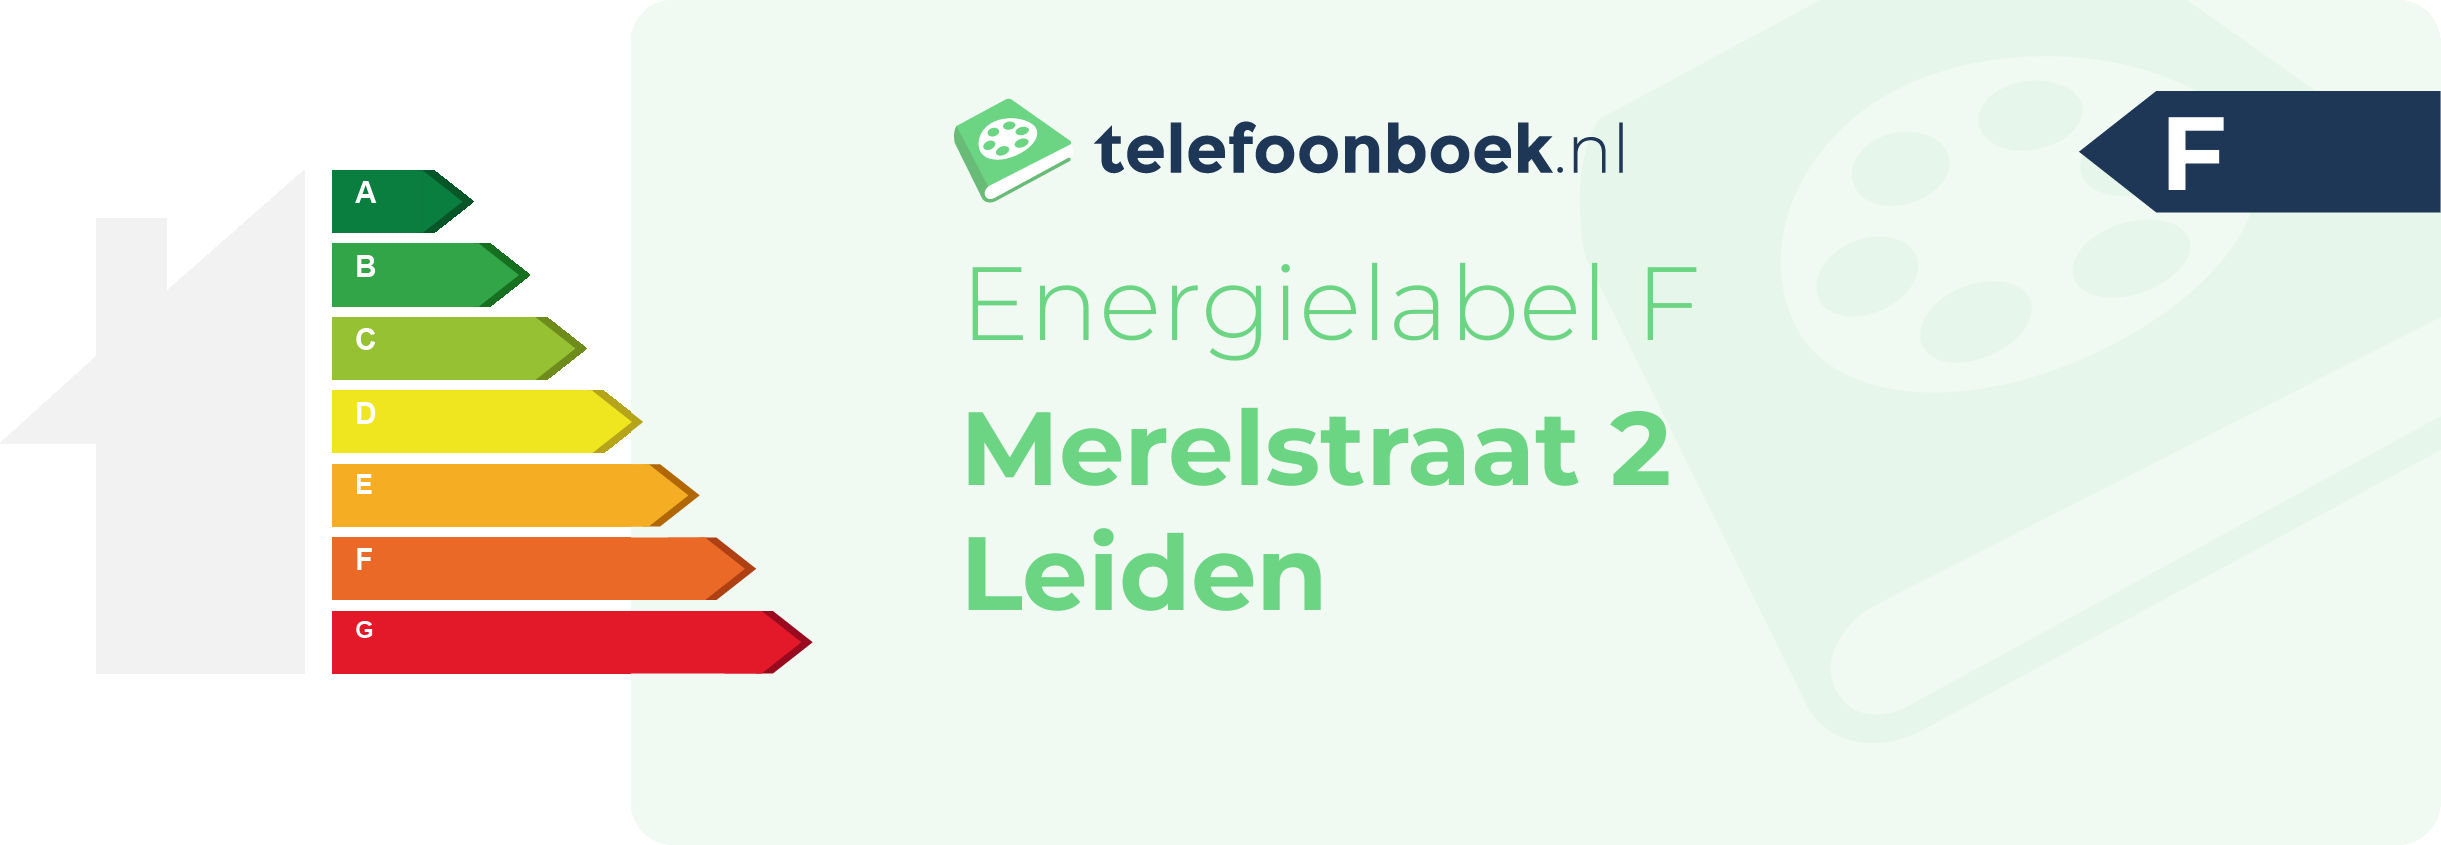 Energielabel Merelstraat 2 Leiden